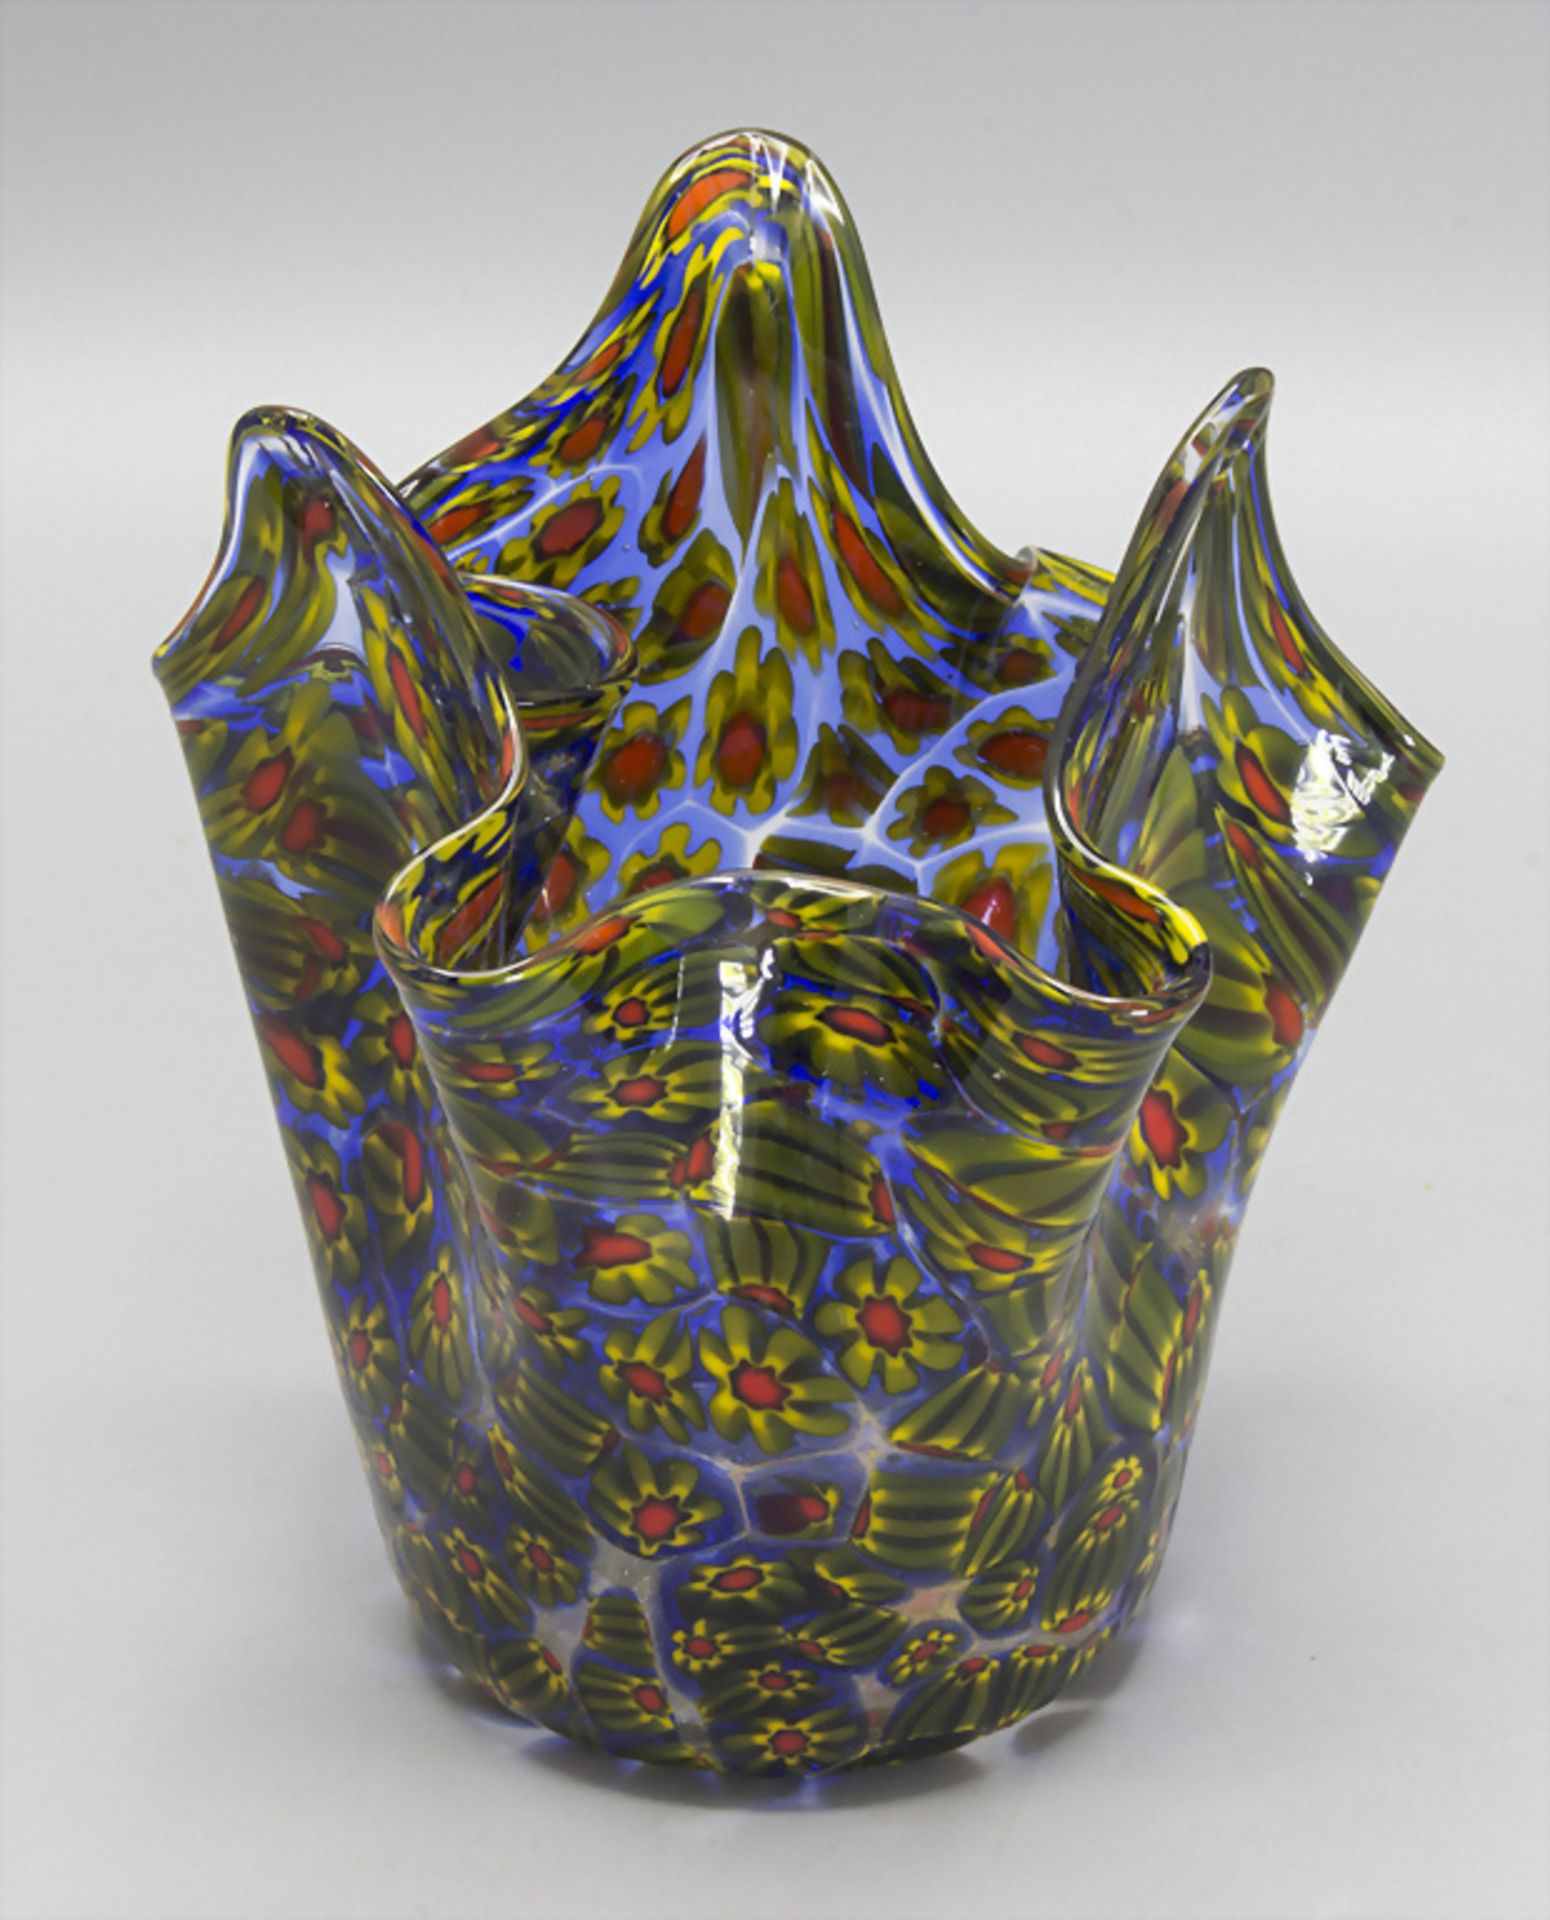 Taschentuchvase 'Fazzoletto' / A handkerchief glass vase, Murano, 50er Jahre